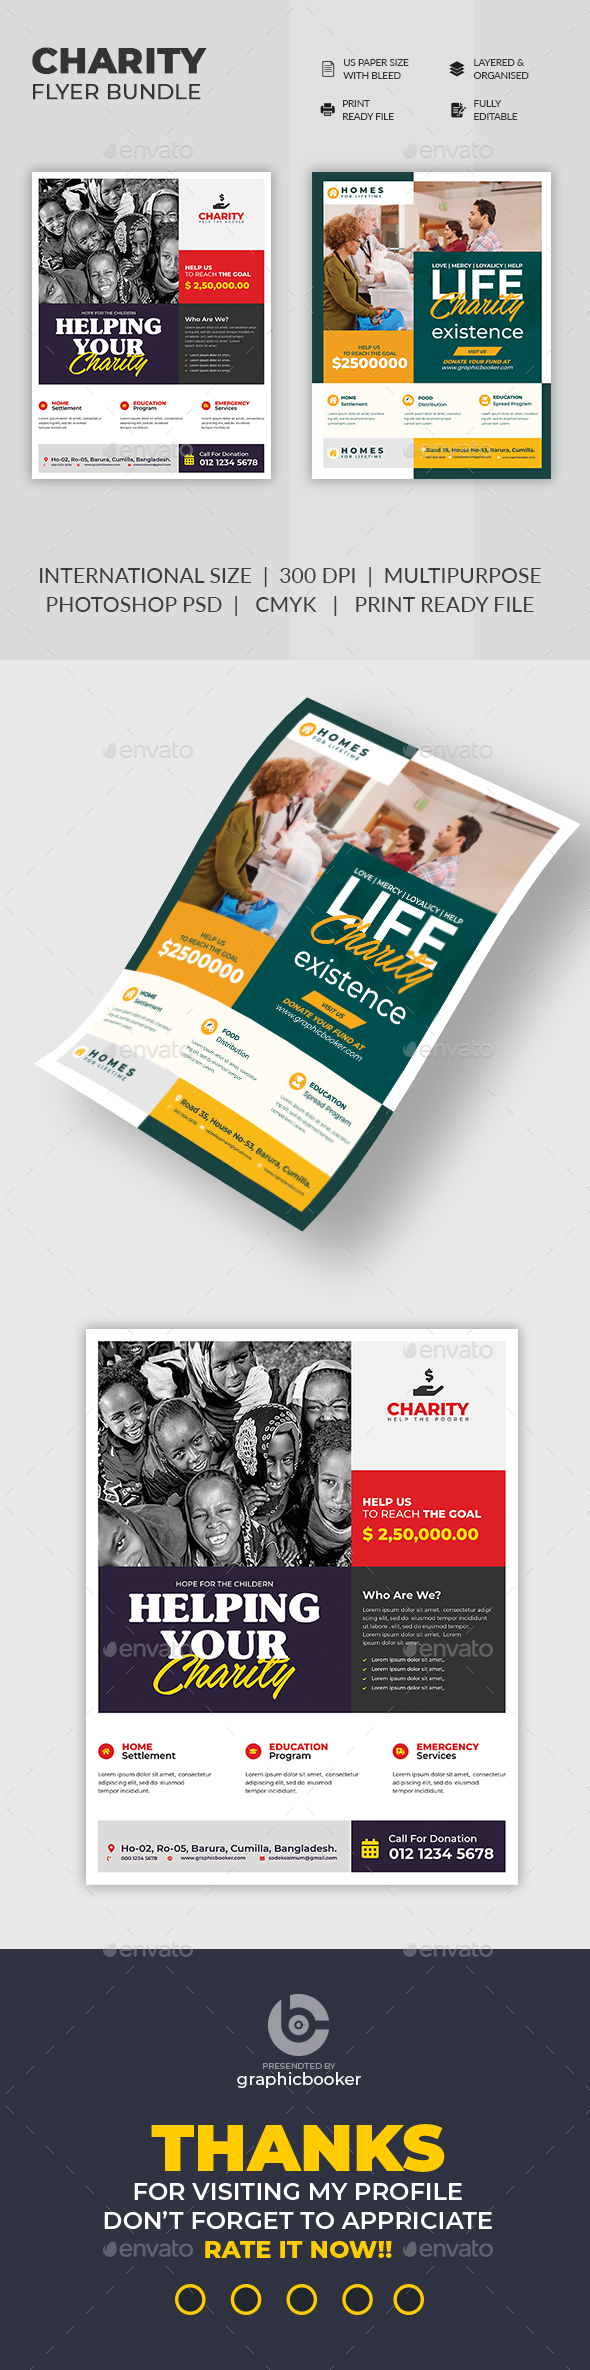 Charity Flyer Bundle